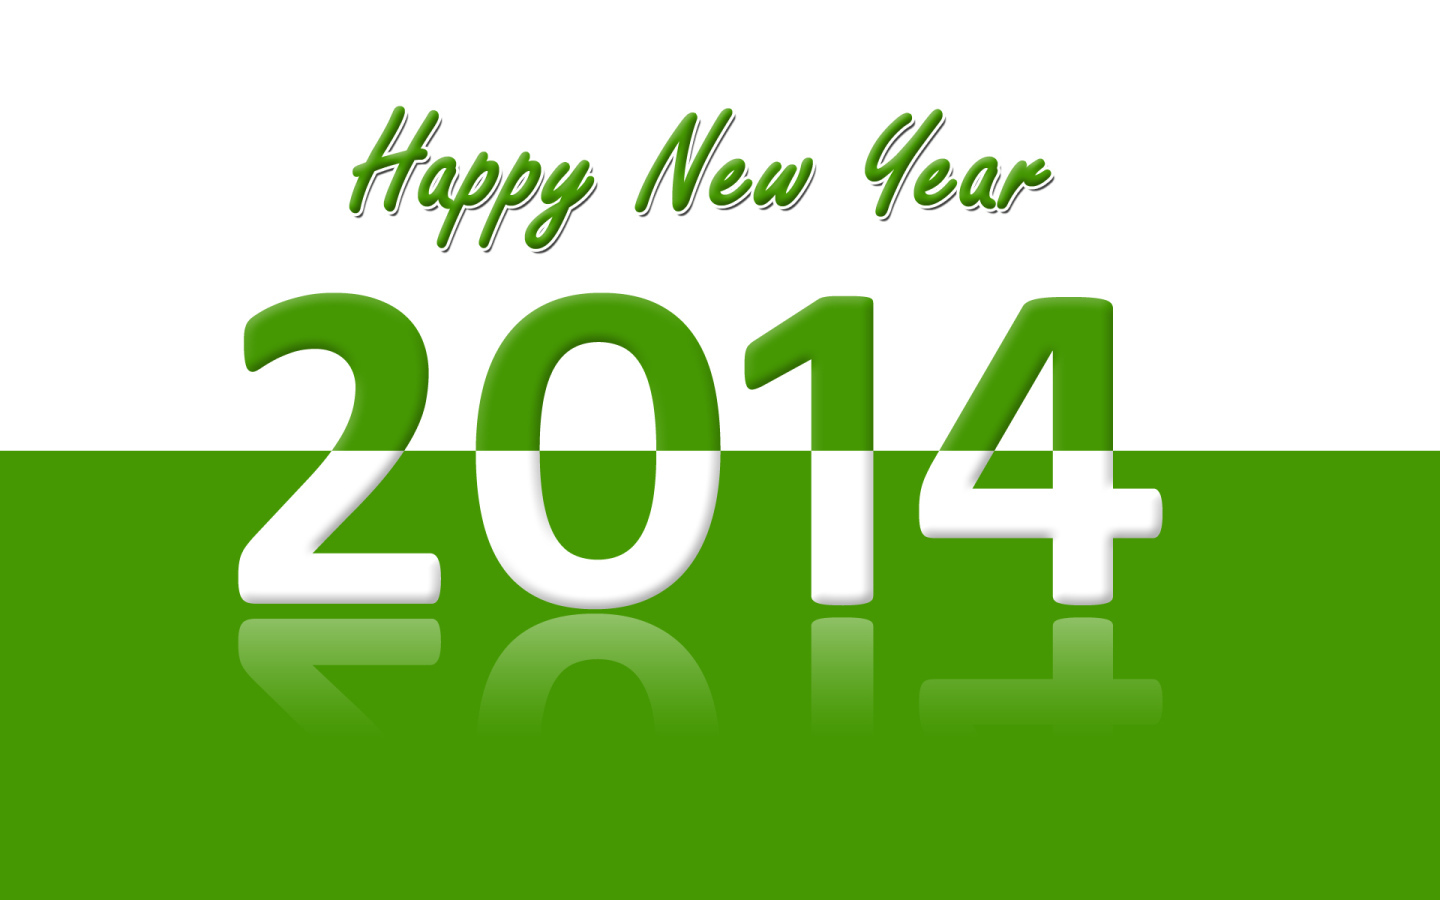 Счастливого Нового Года 2014, зелёный и белый цвет